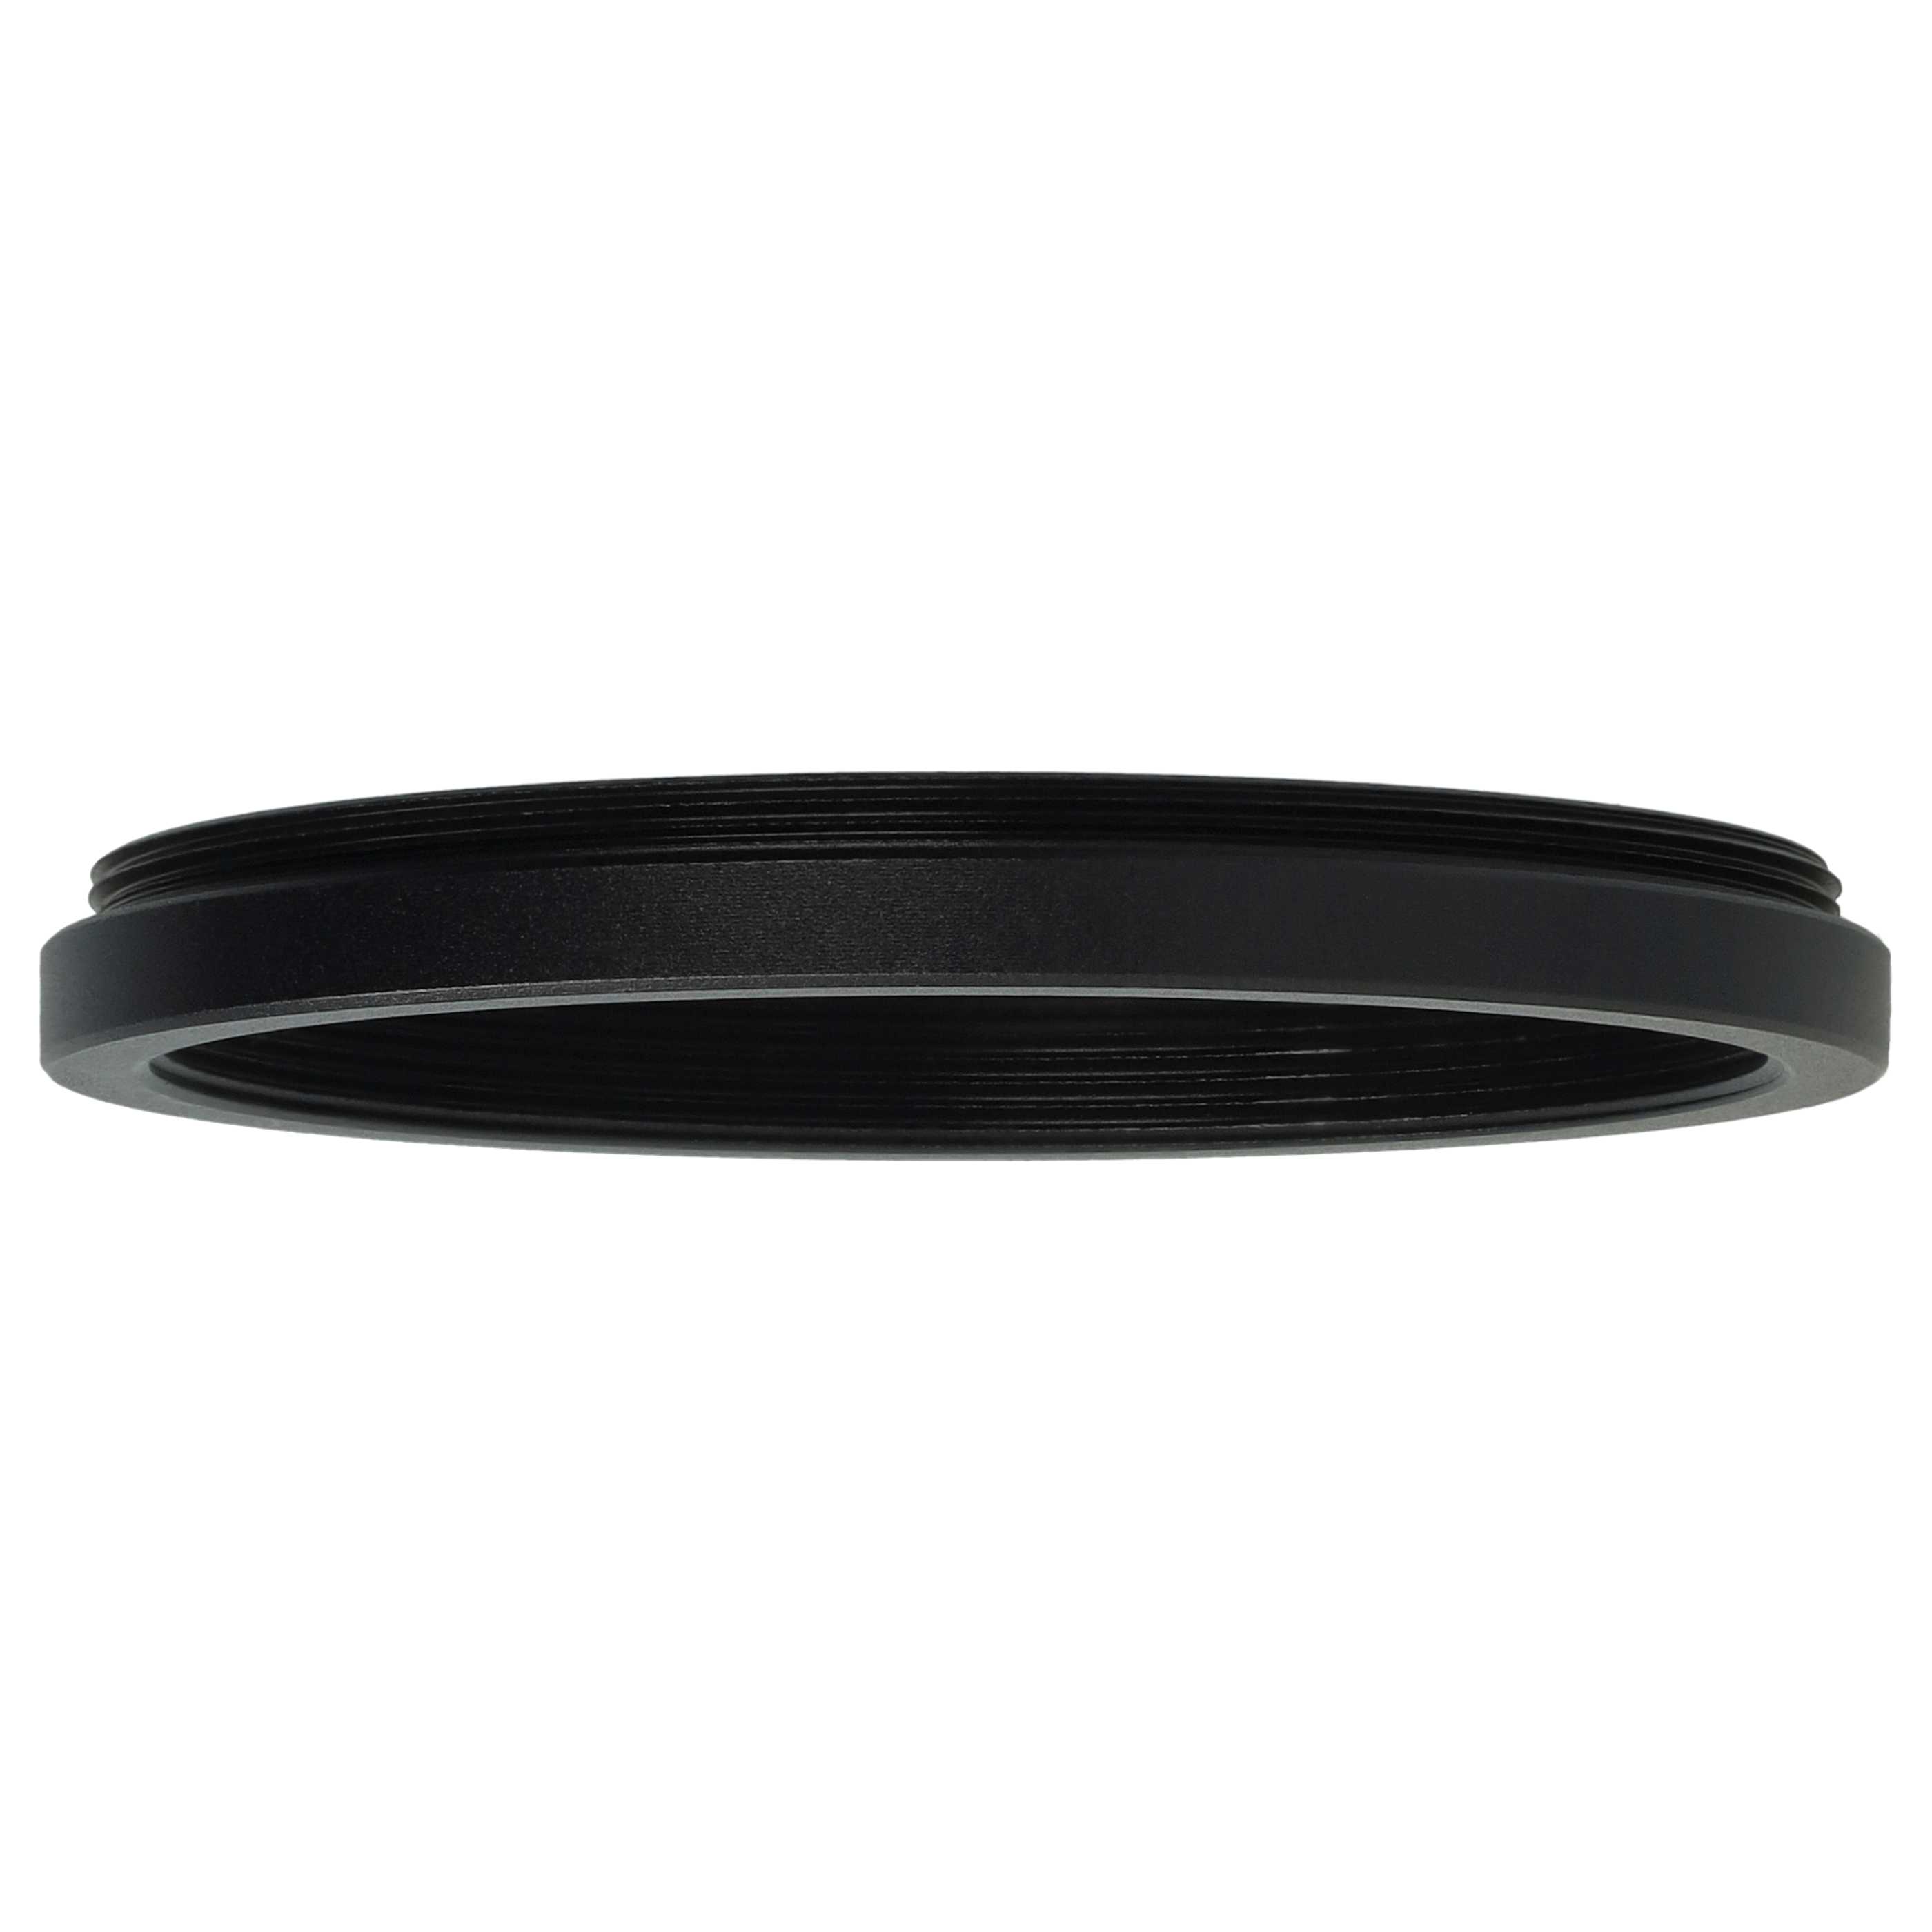 Step-Down-Ring Adapter von 52 mm auf 48 mm passend für Kamera Objektiv - Filteradapter, Metall, schwarz